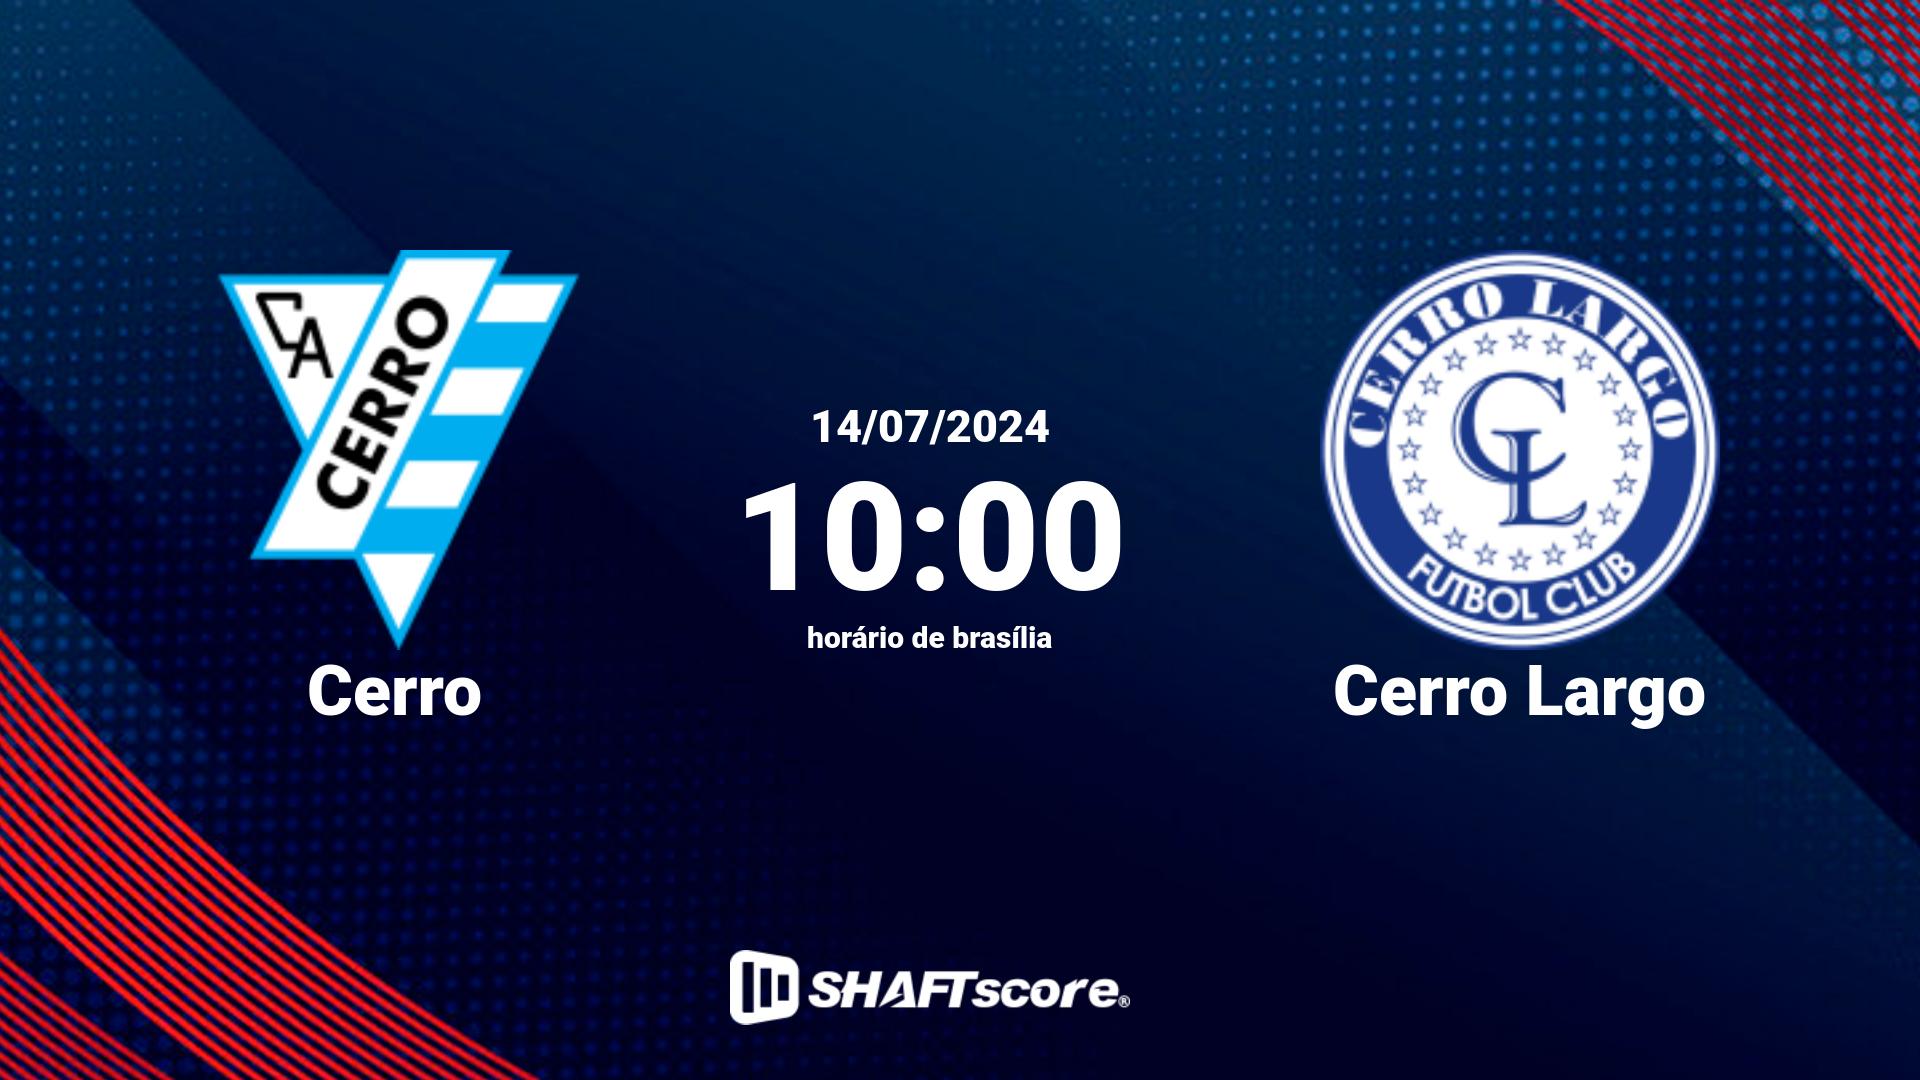 Estatísticas do jogo Cerro vs Cerro Largo 14.07 10:00